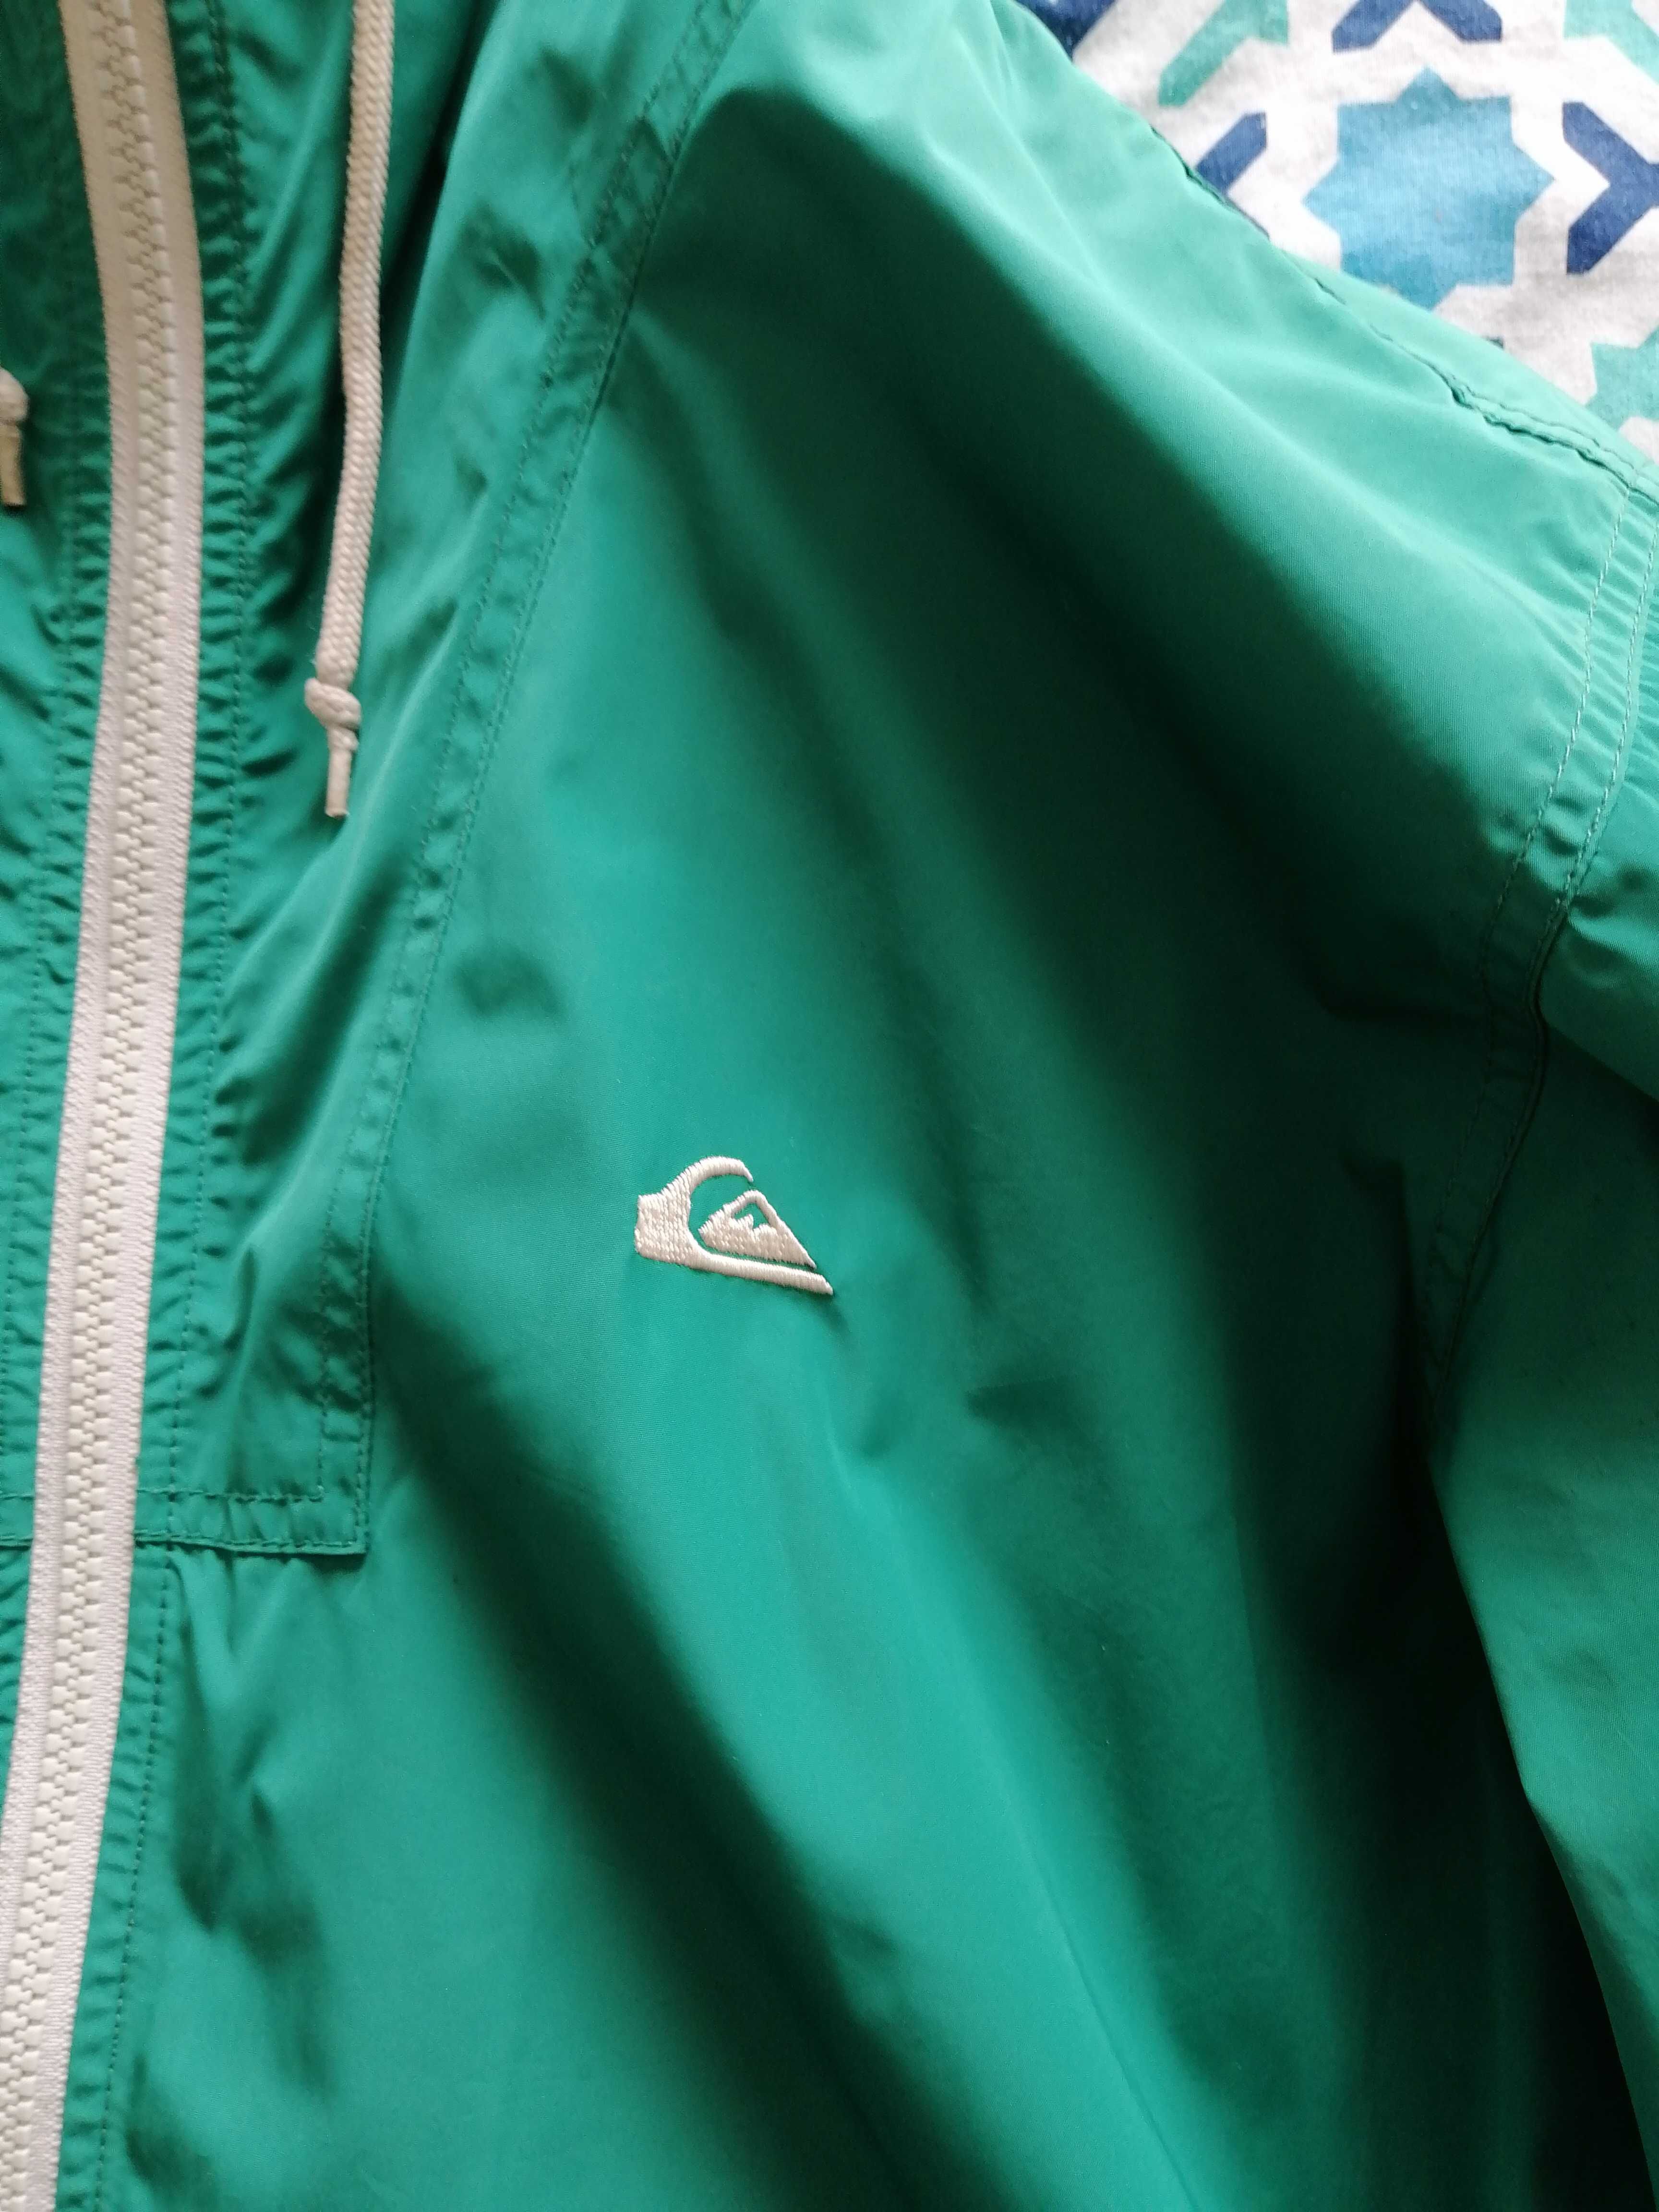 Casaco Quicksilver verde, tamanho S, usado.